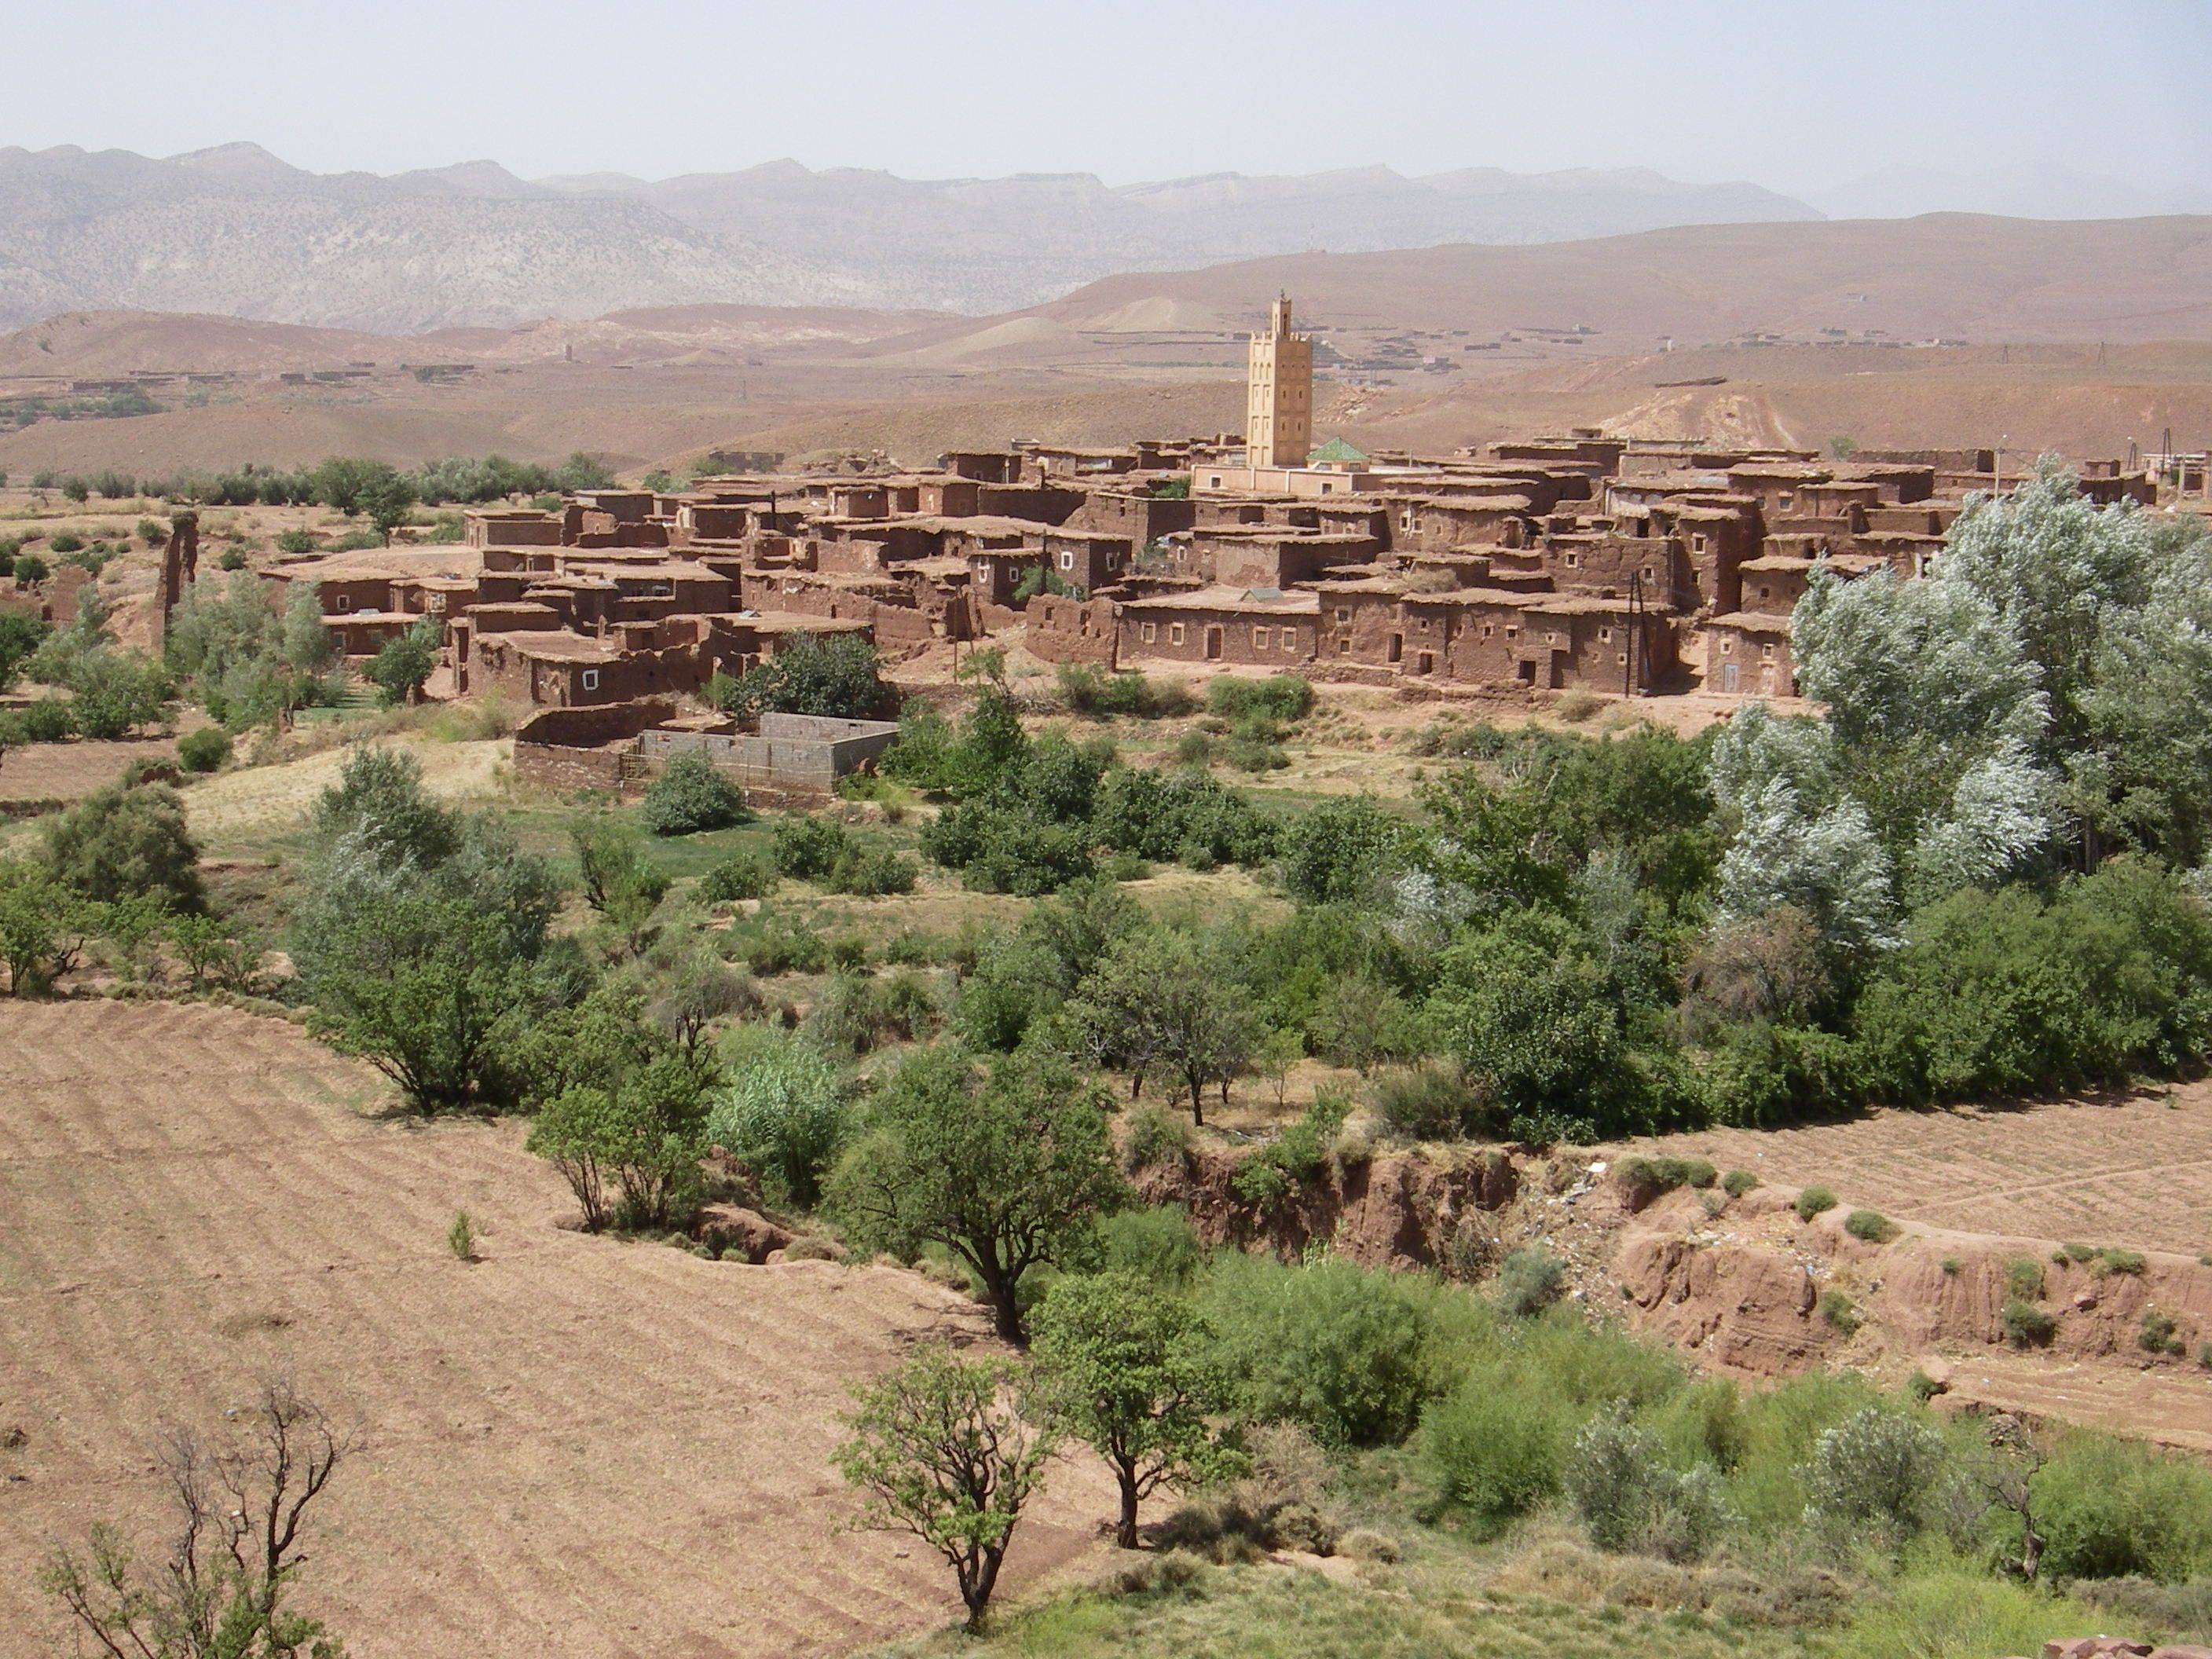 Recorrido por  Telouet, Ait Ben Haddou, Ouarzazate, Skoura, Valle de la rosas, Dades